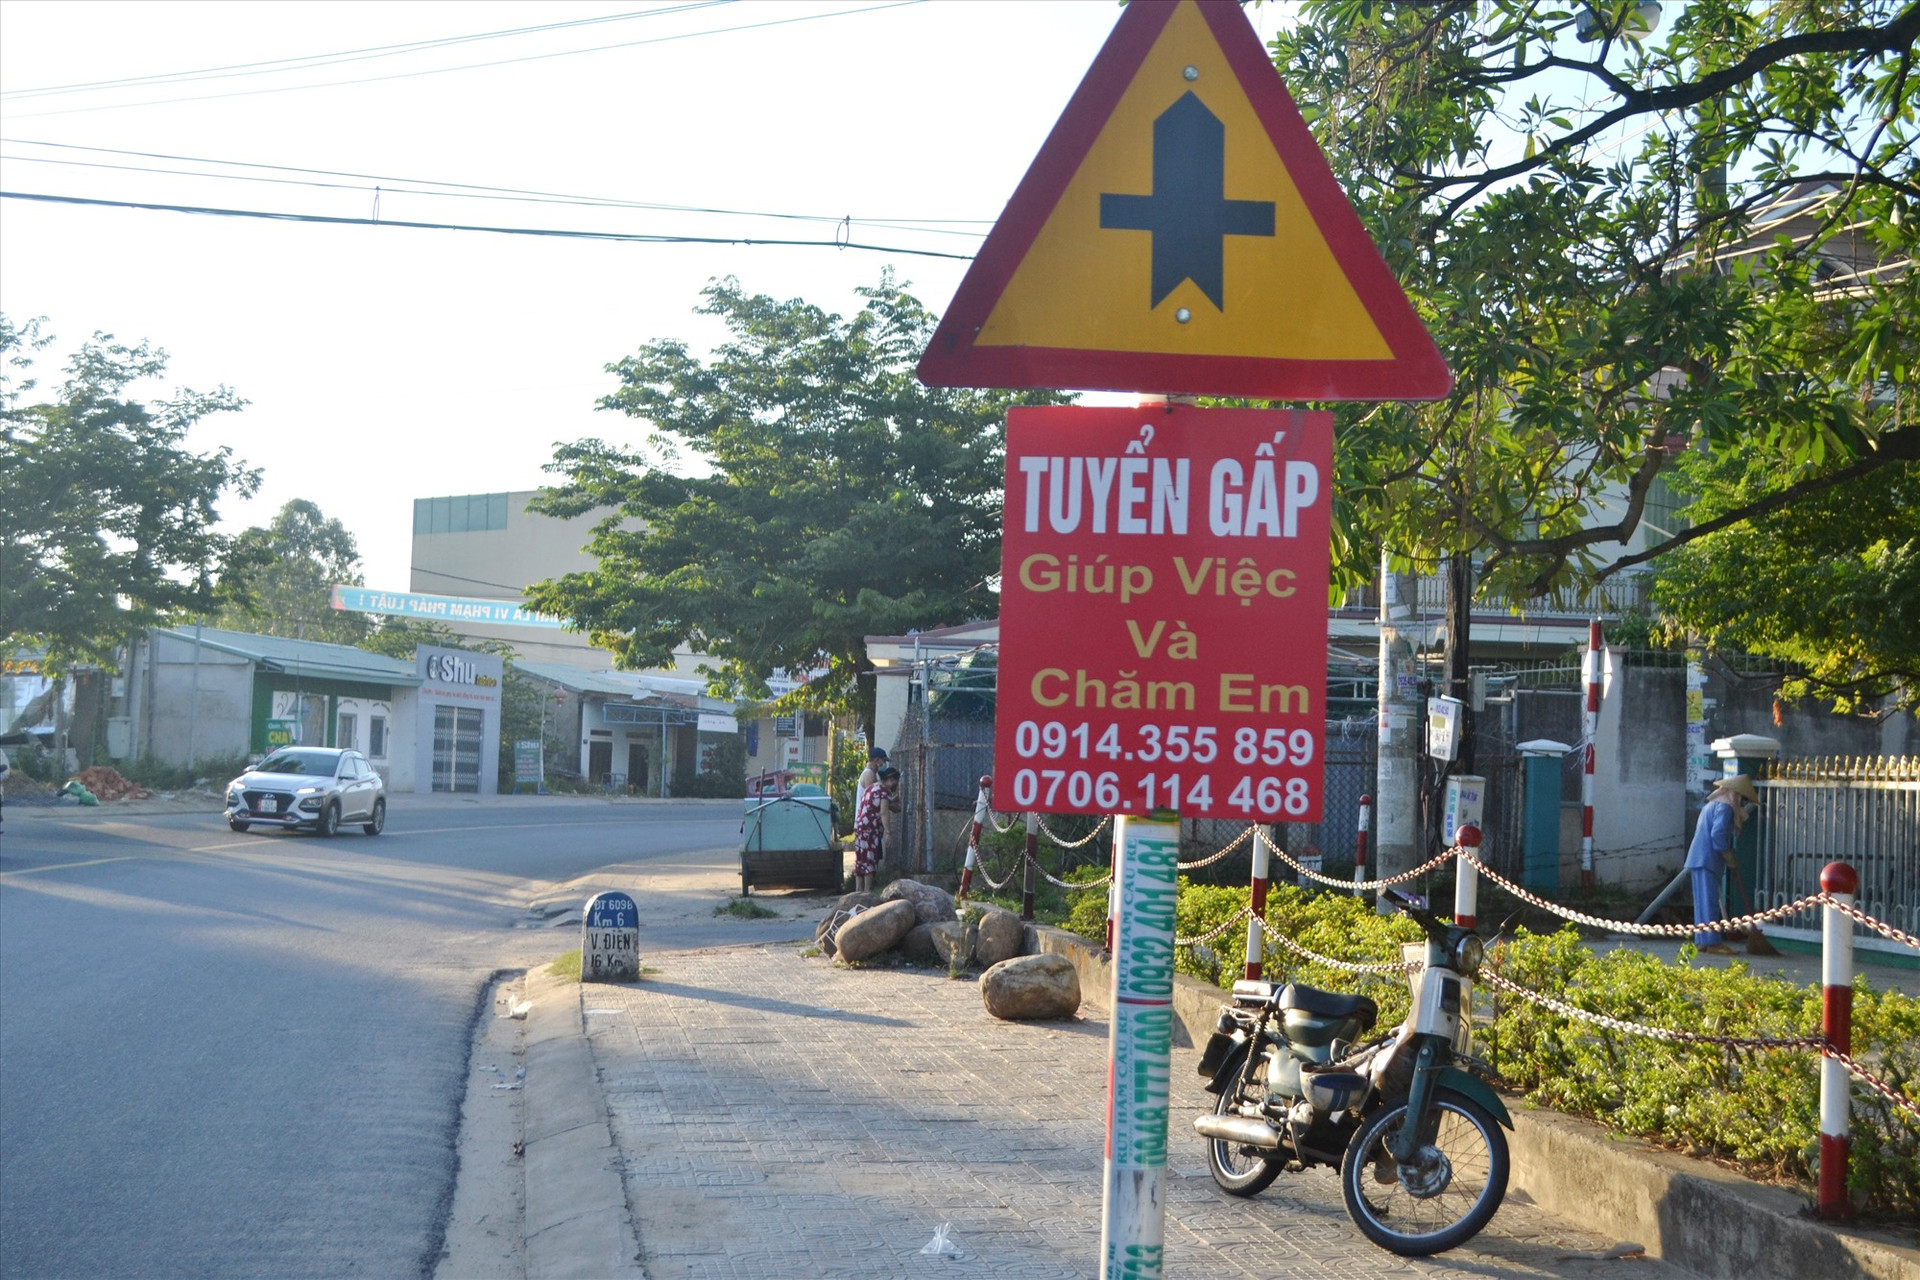 Tấm rao vặt “bu bám” biển báo trên tuyến ĐT609B, trước Bệnh viện Đa khoa khu vực miền núi phía Bắc Quảng Nam. Ảnh: T.C.T